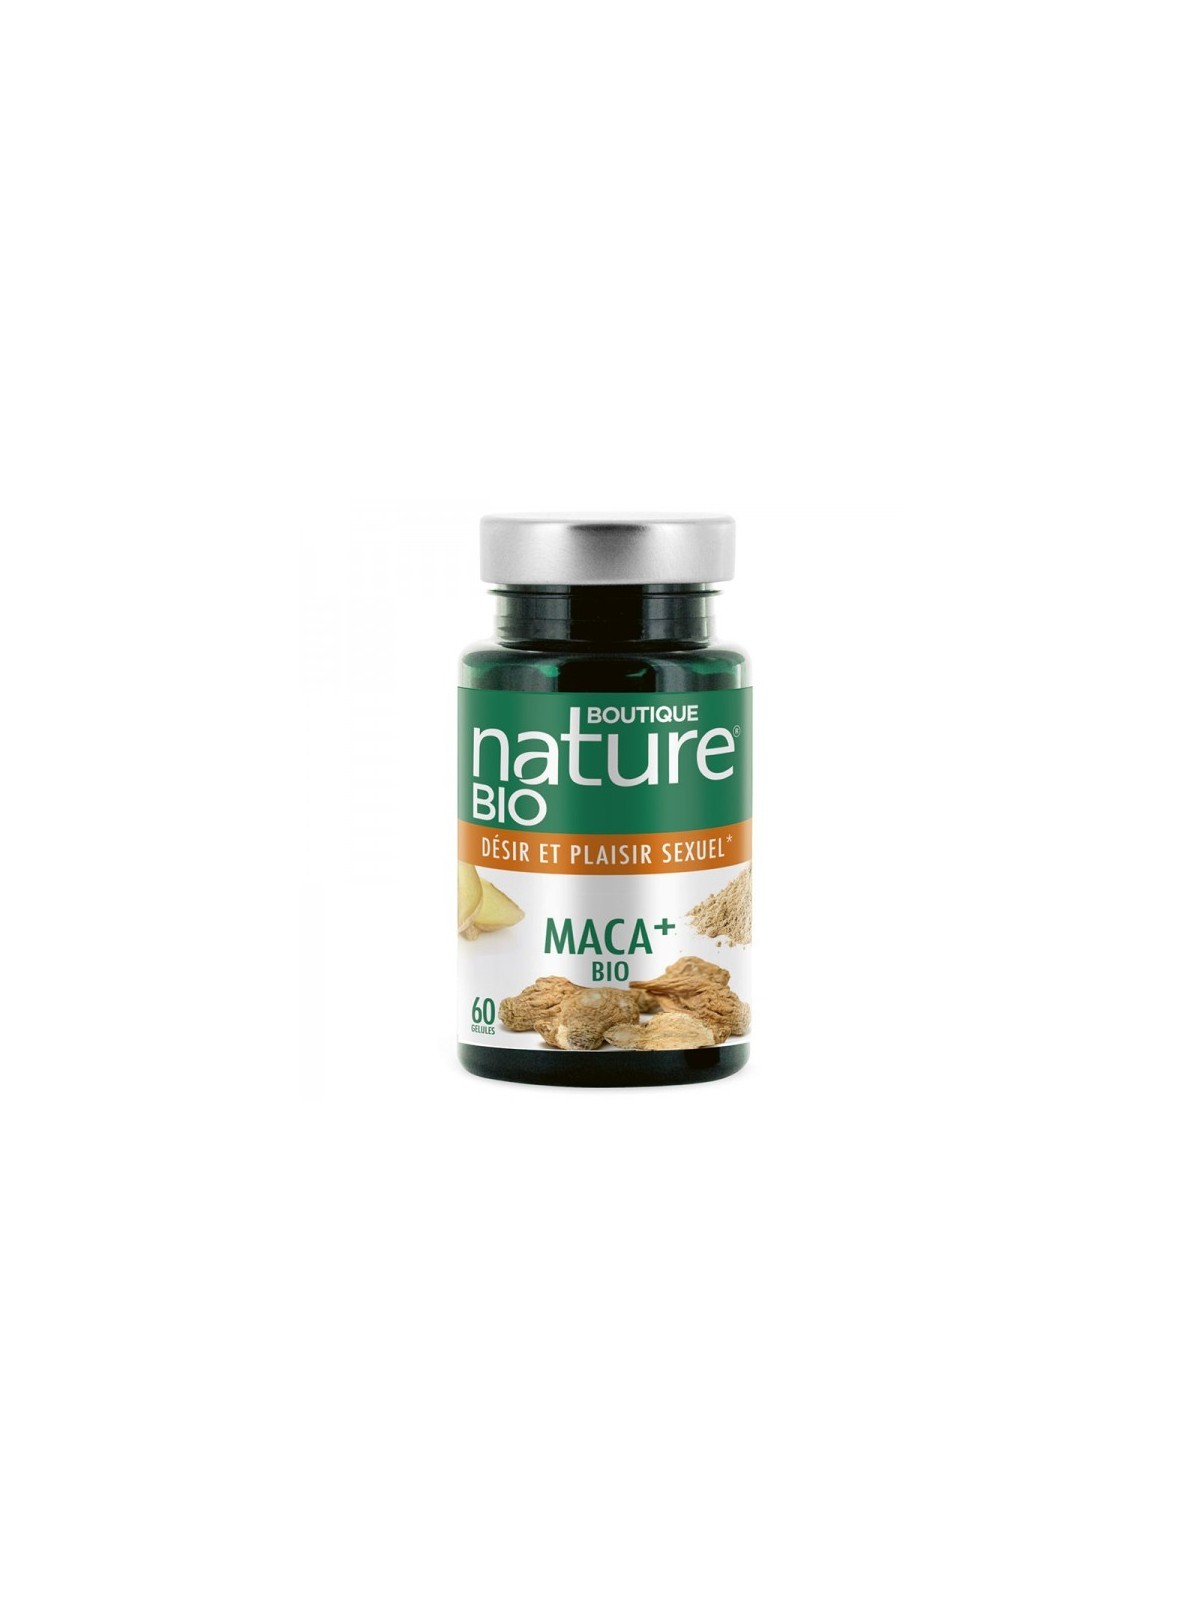 Maca + Bio (60 gélules) - Boutique Nature